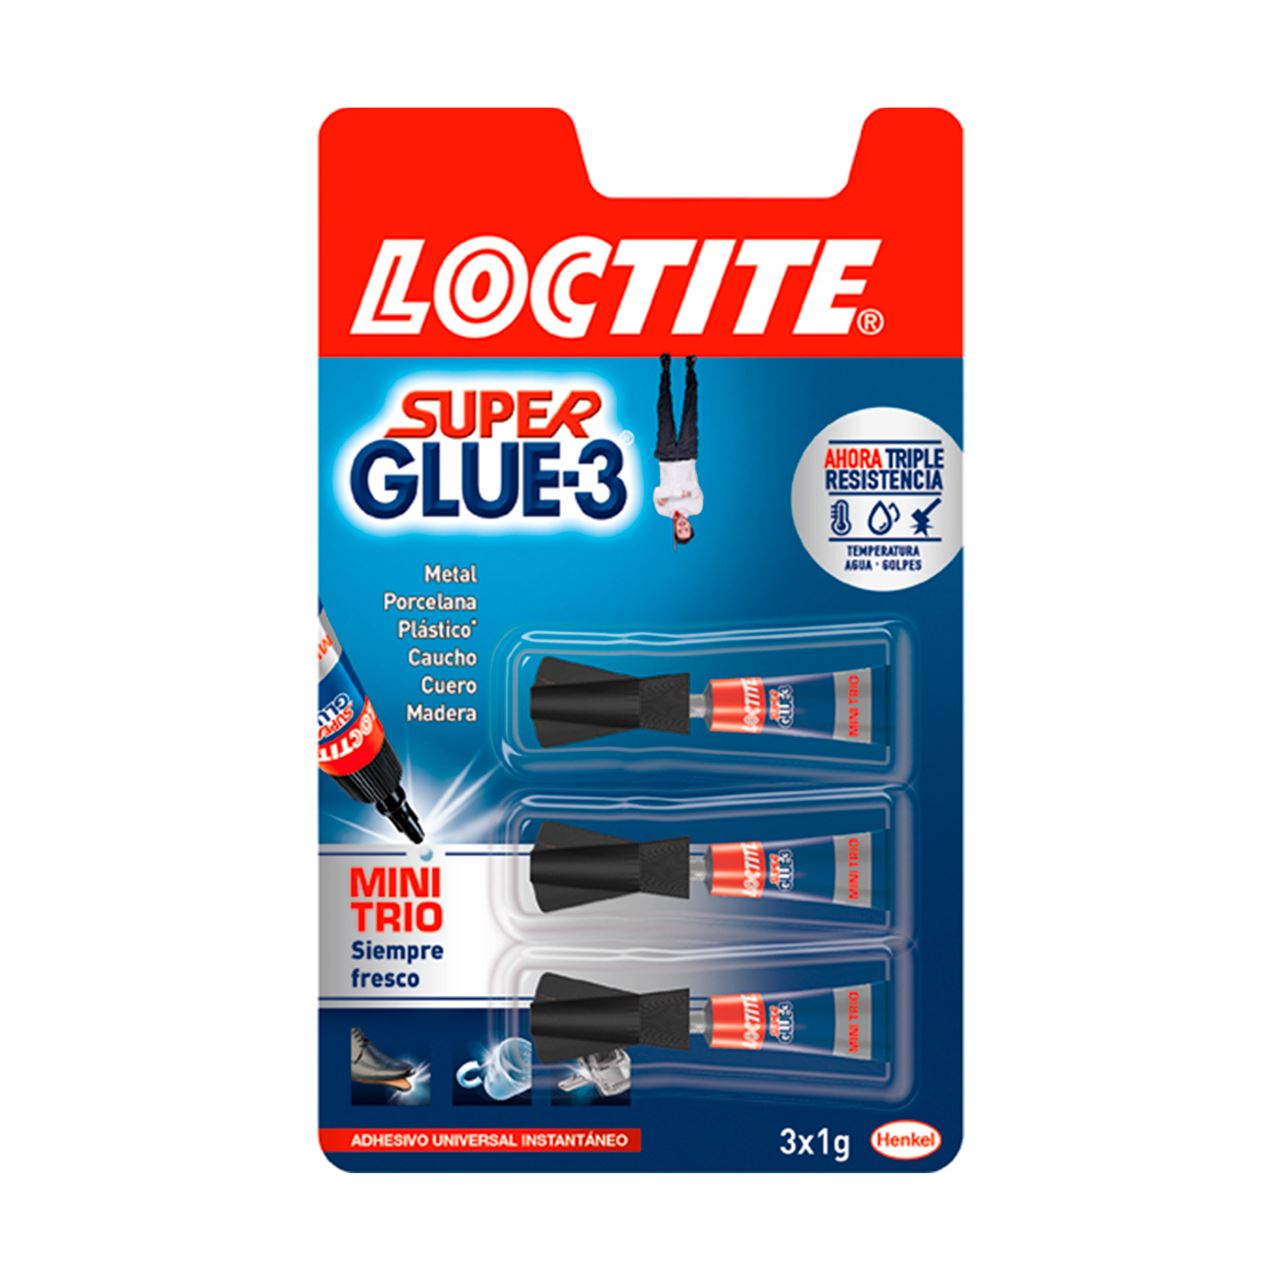 Loctite Super glue 3 3+3 gramos - Suministros Urquiza